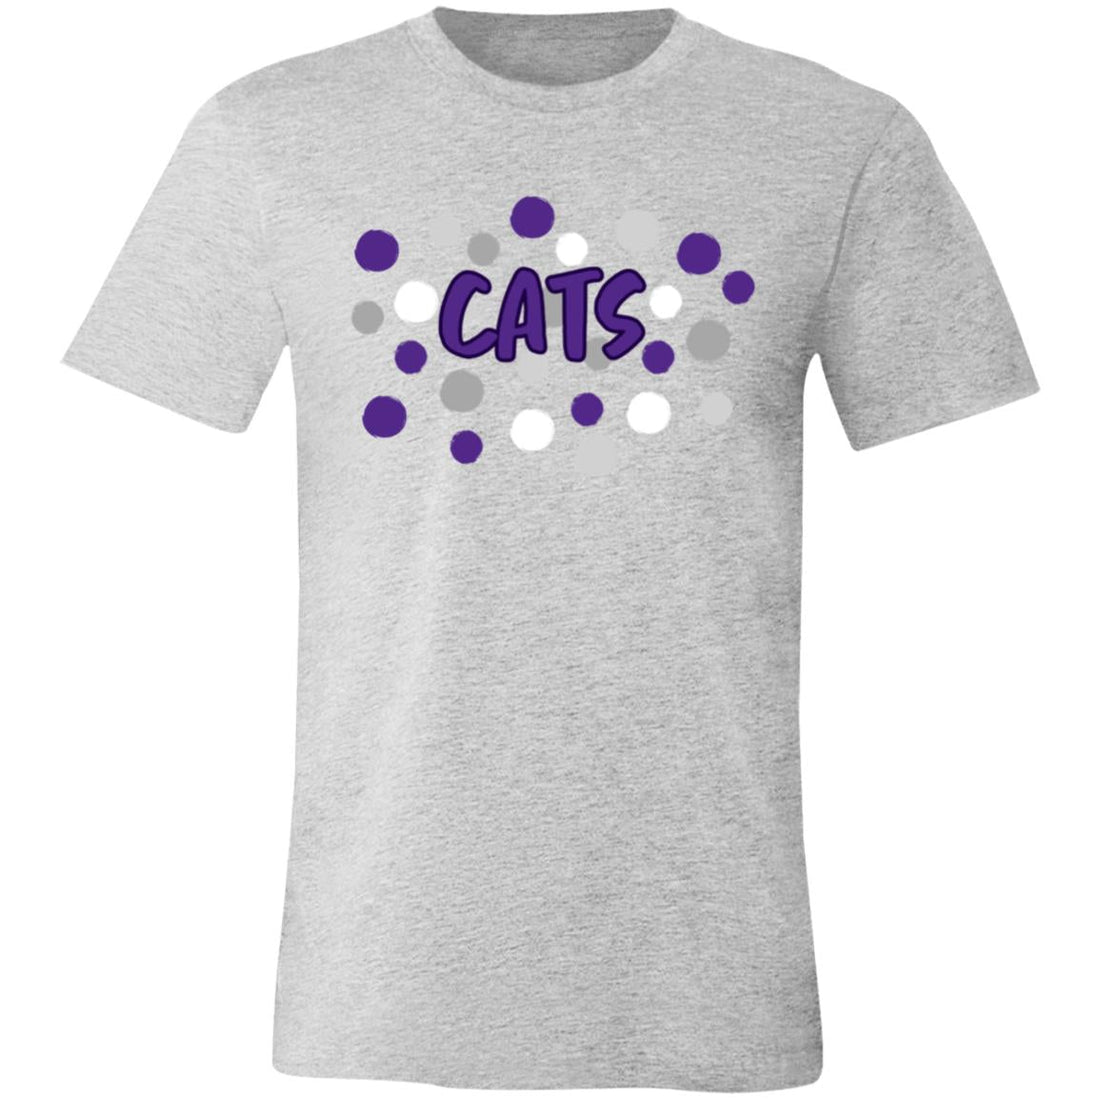 Cats Spots Unisex Jersey Short-Sleeve T-Shirt - T-Shirts - Positively Sassy - Cats Spots Unisex Jersey Short-Sleeve T-Shirt